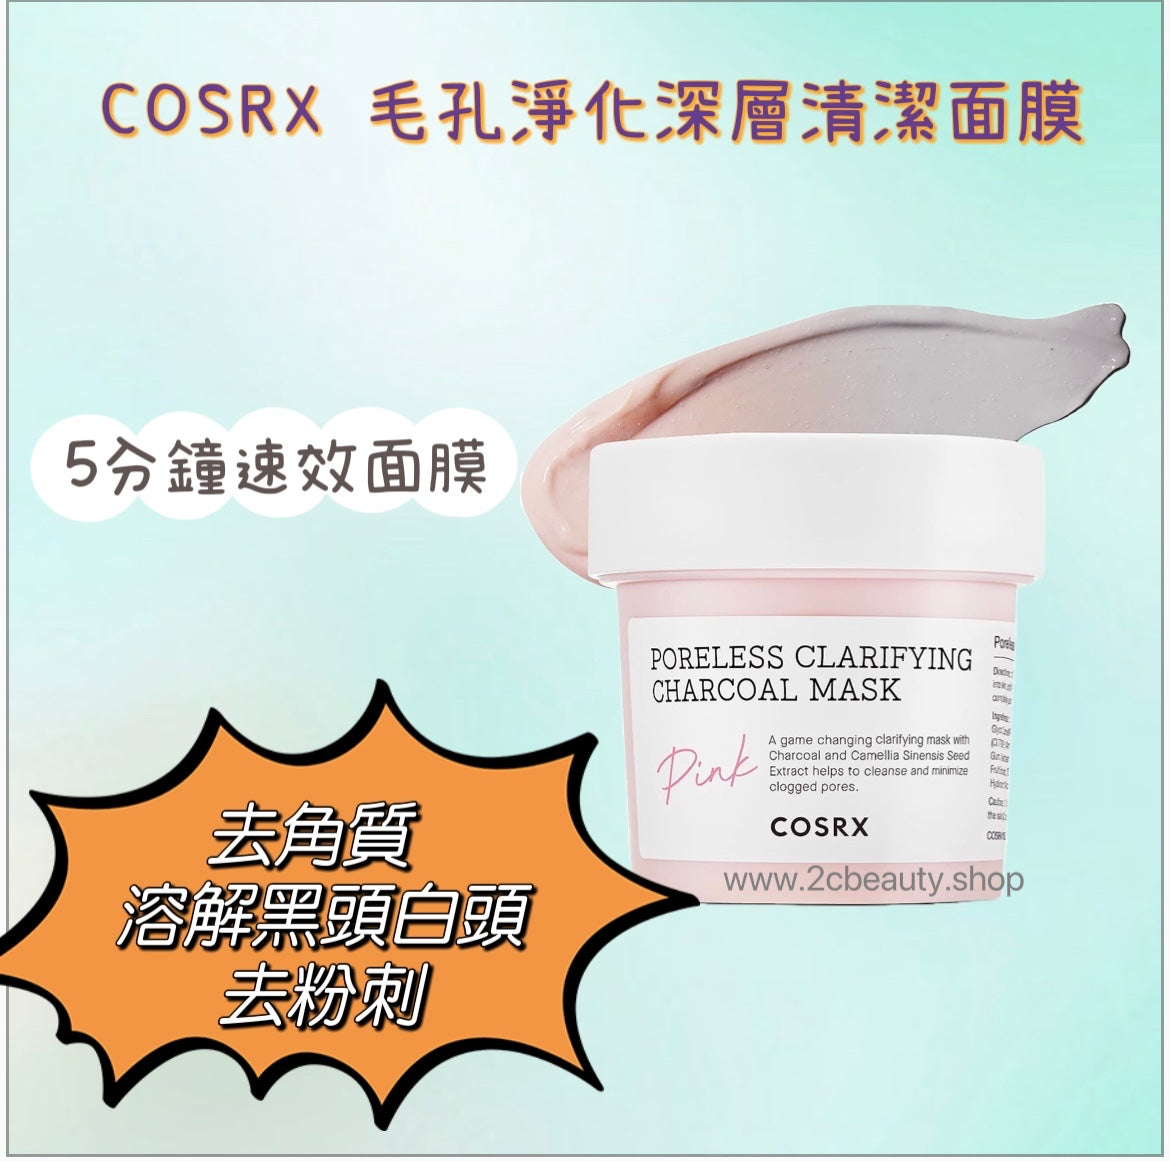 COSRX 毛孔淨化深層清潔面膜